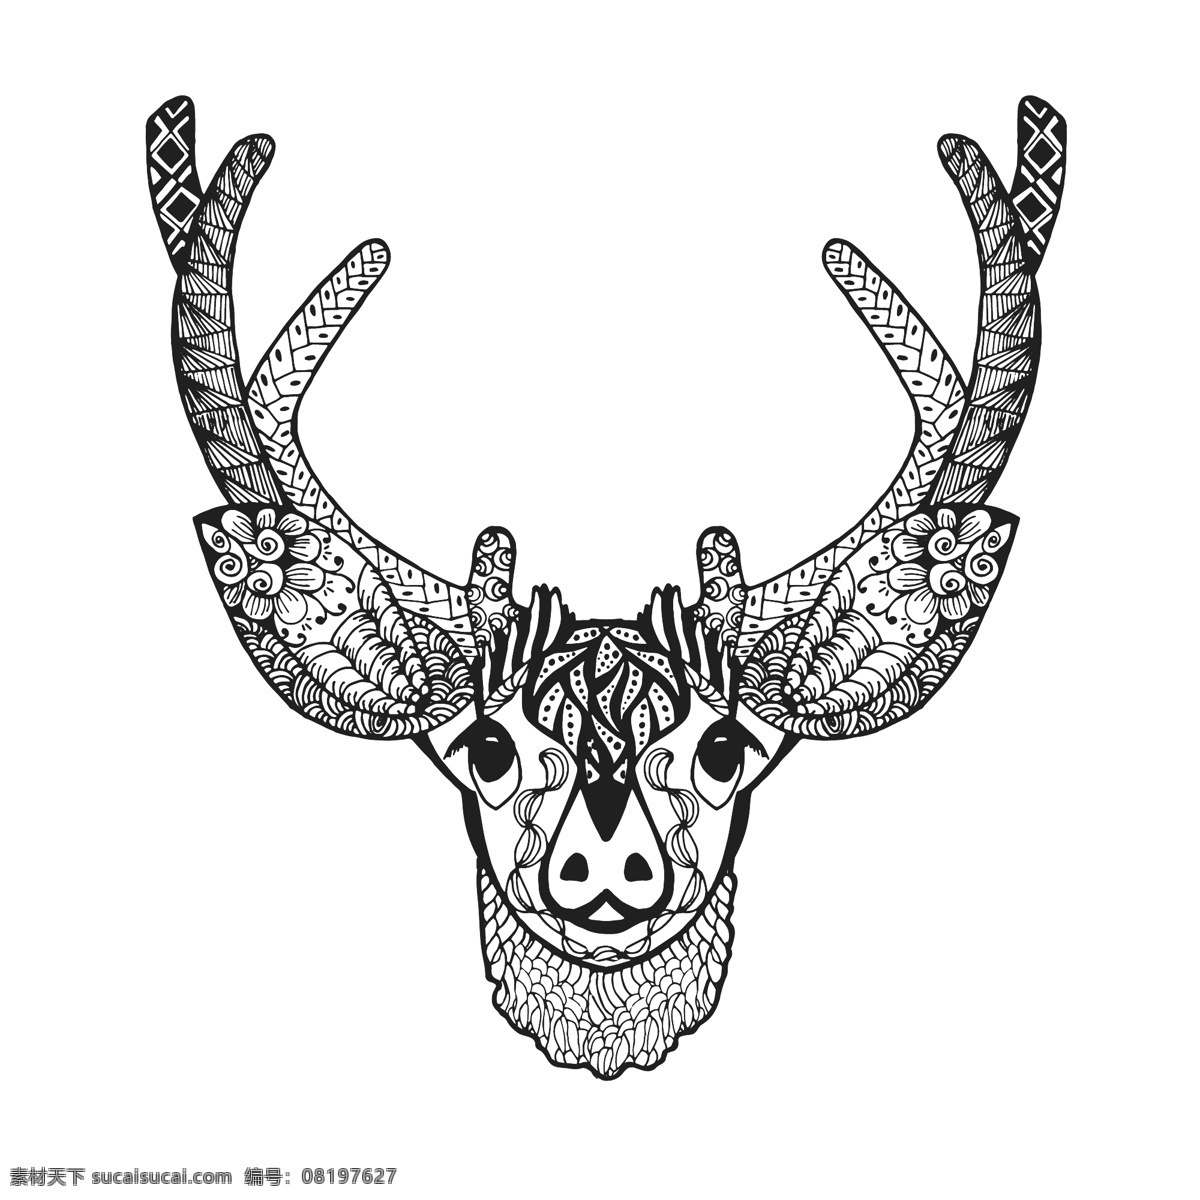 黑白 艺术 鹿角 图案 动物 创意 手绘 花朵 麋鹿